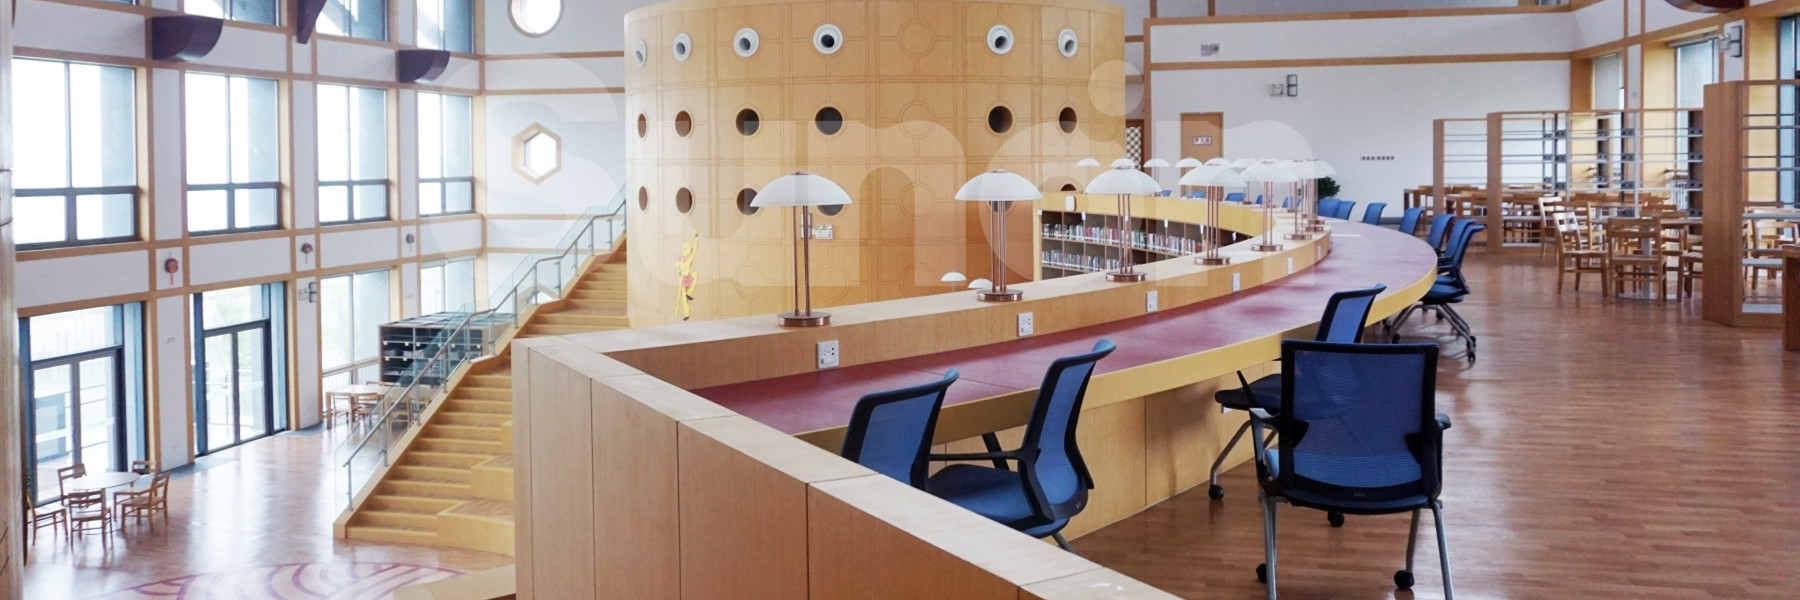 UWC世界联合学院阅览室 圣奥办公家具设计